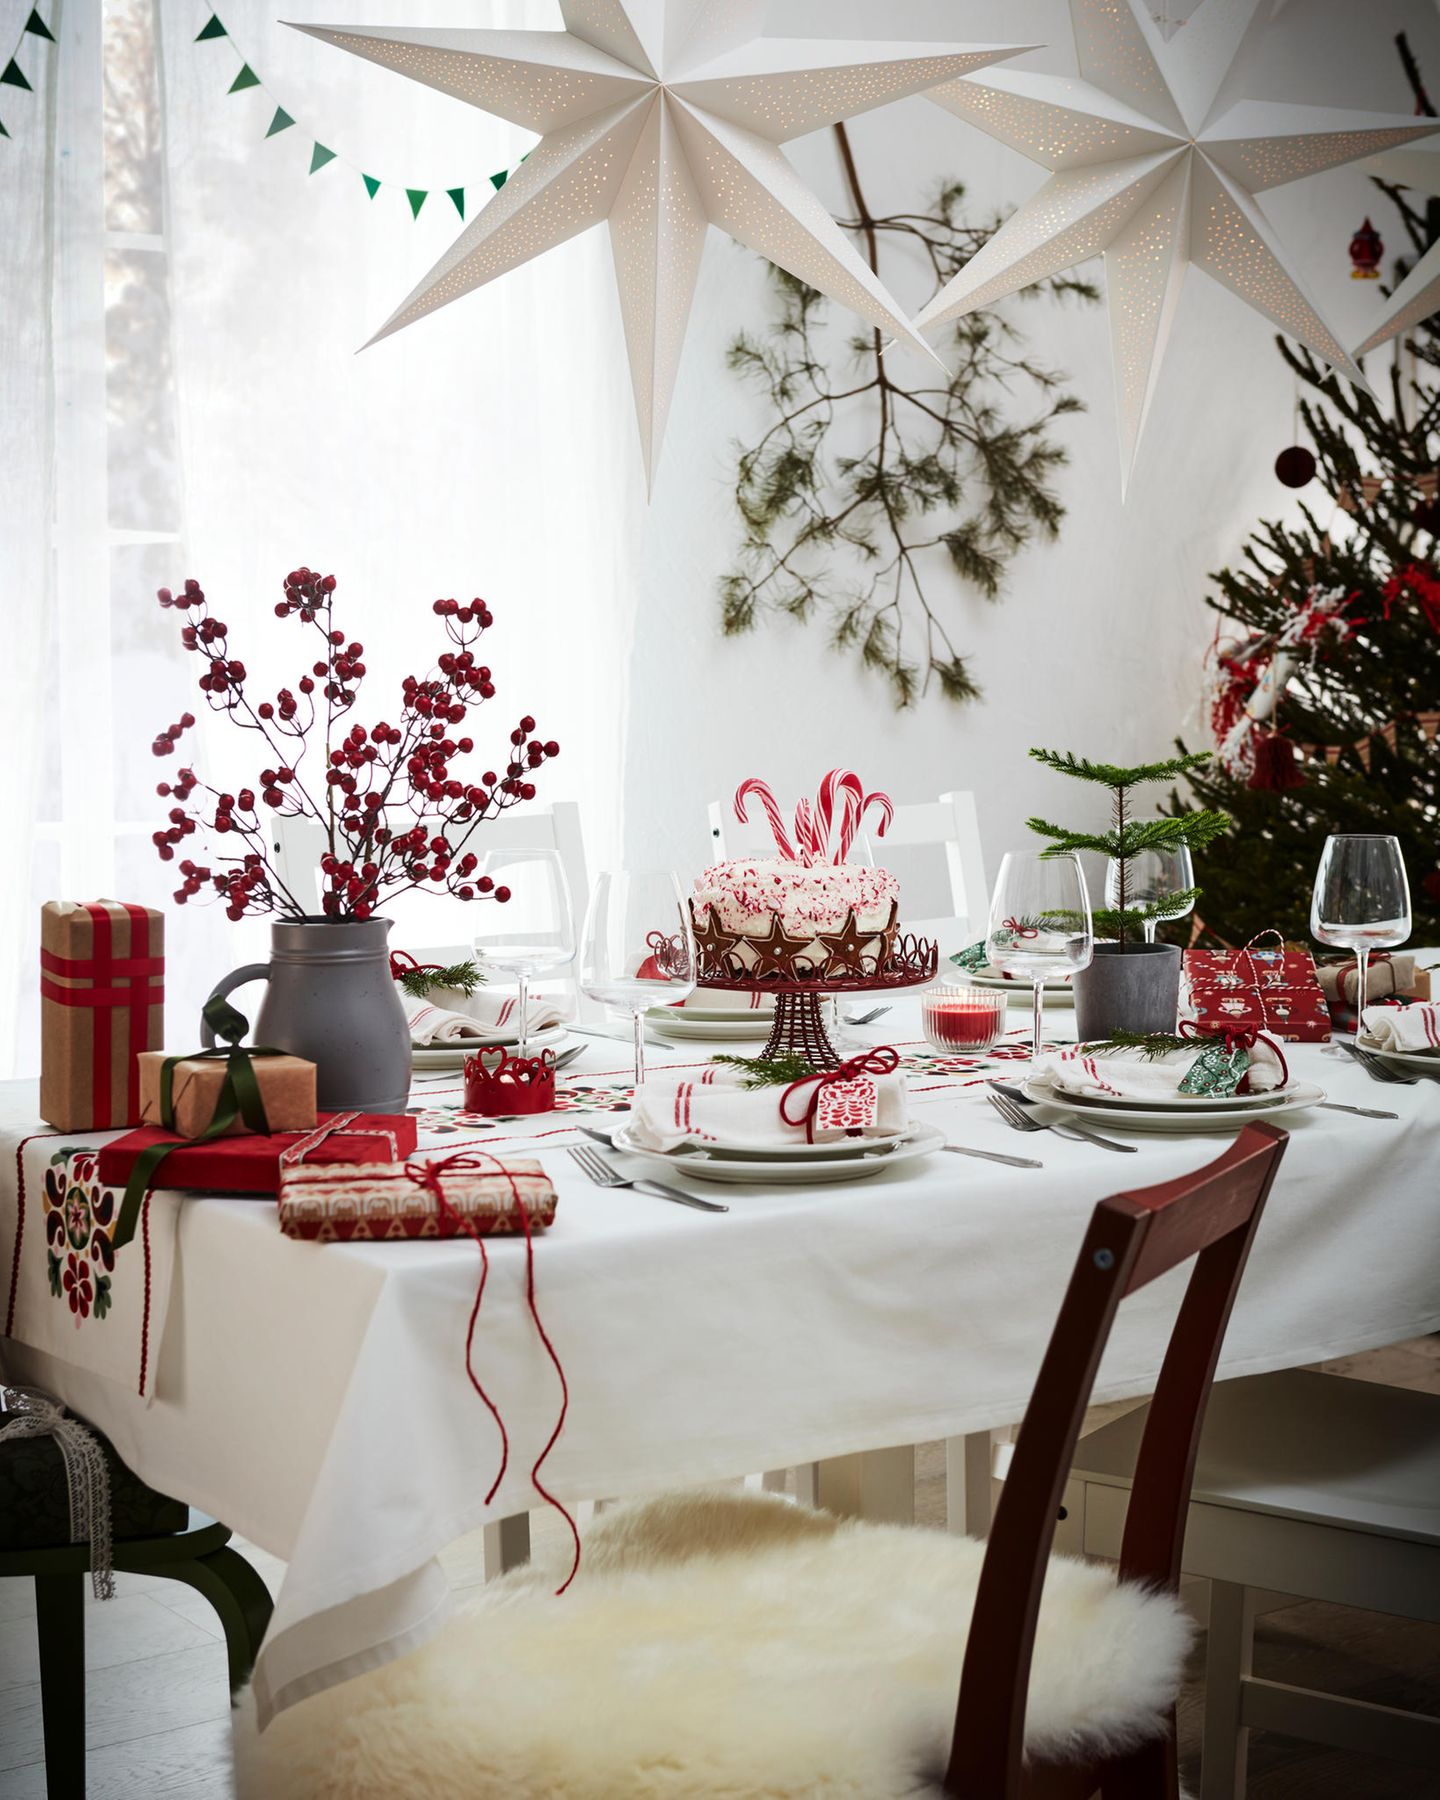 Weiße Tischdeko mit rot-weißen Servietten, weißem Geschirr und roten Beerenzweigen in einer grauen Vase